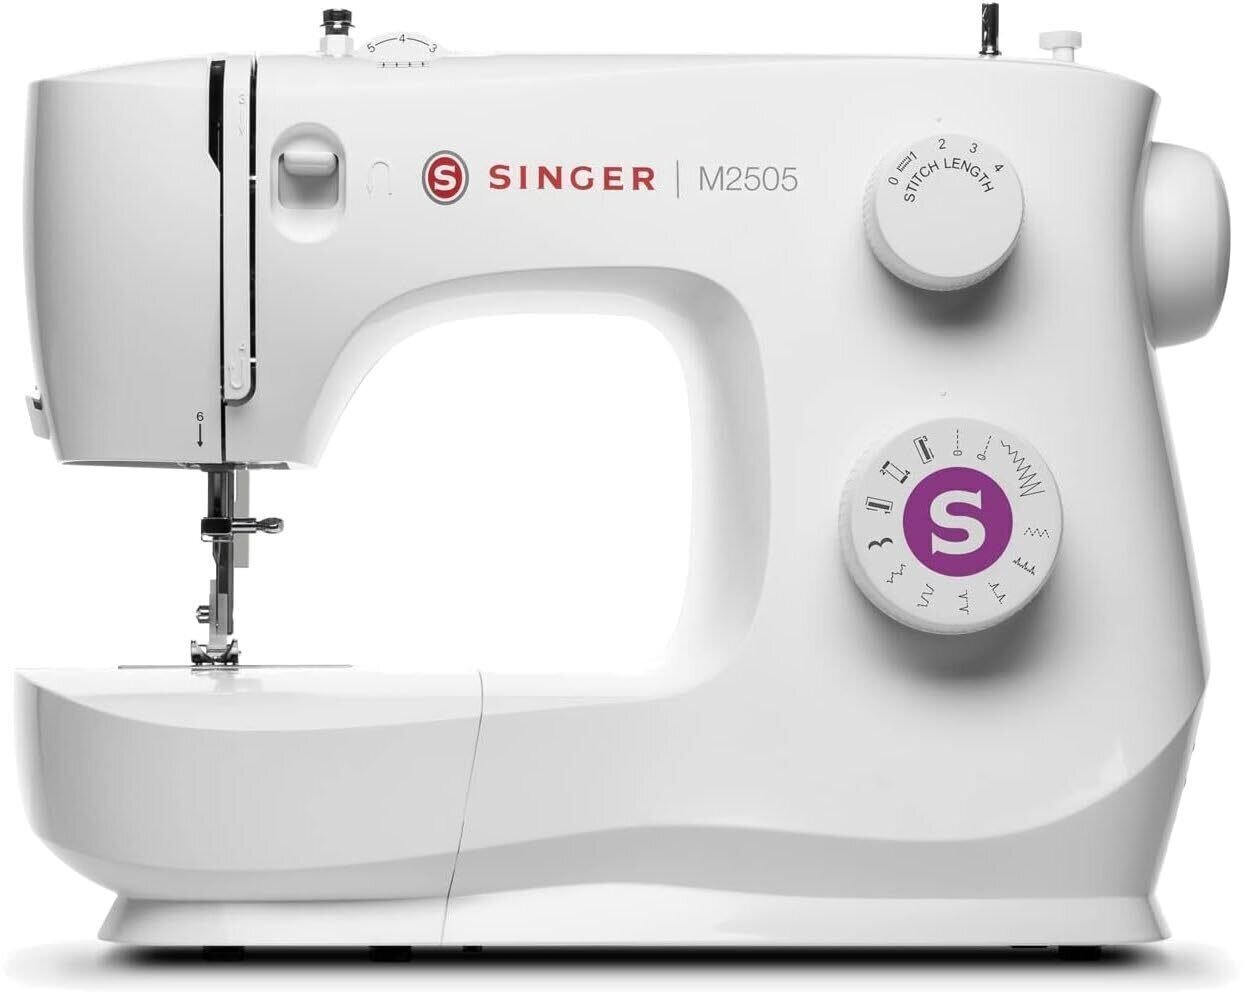 Sewing Machine Singer M2505